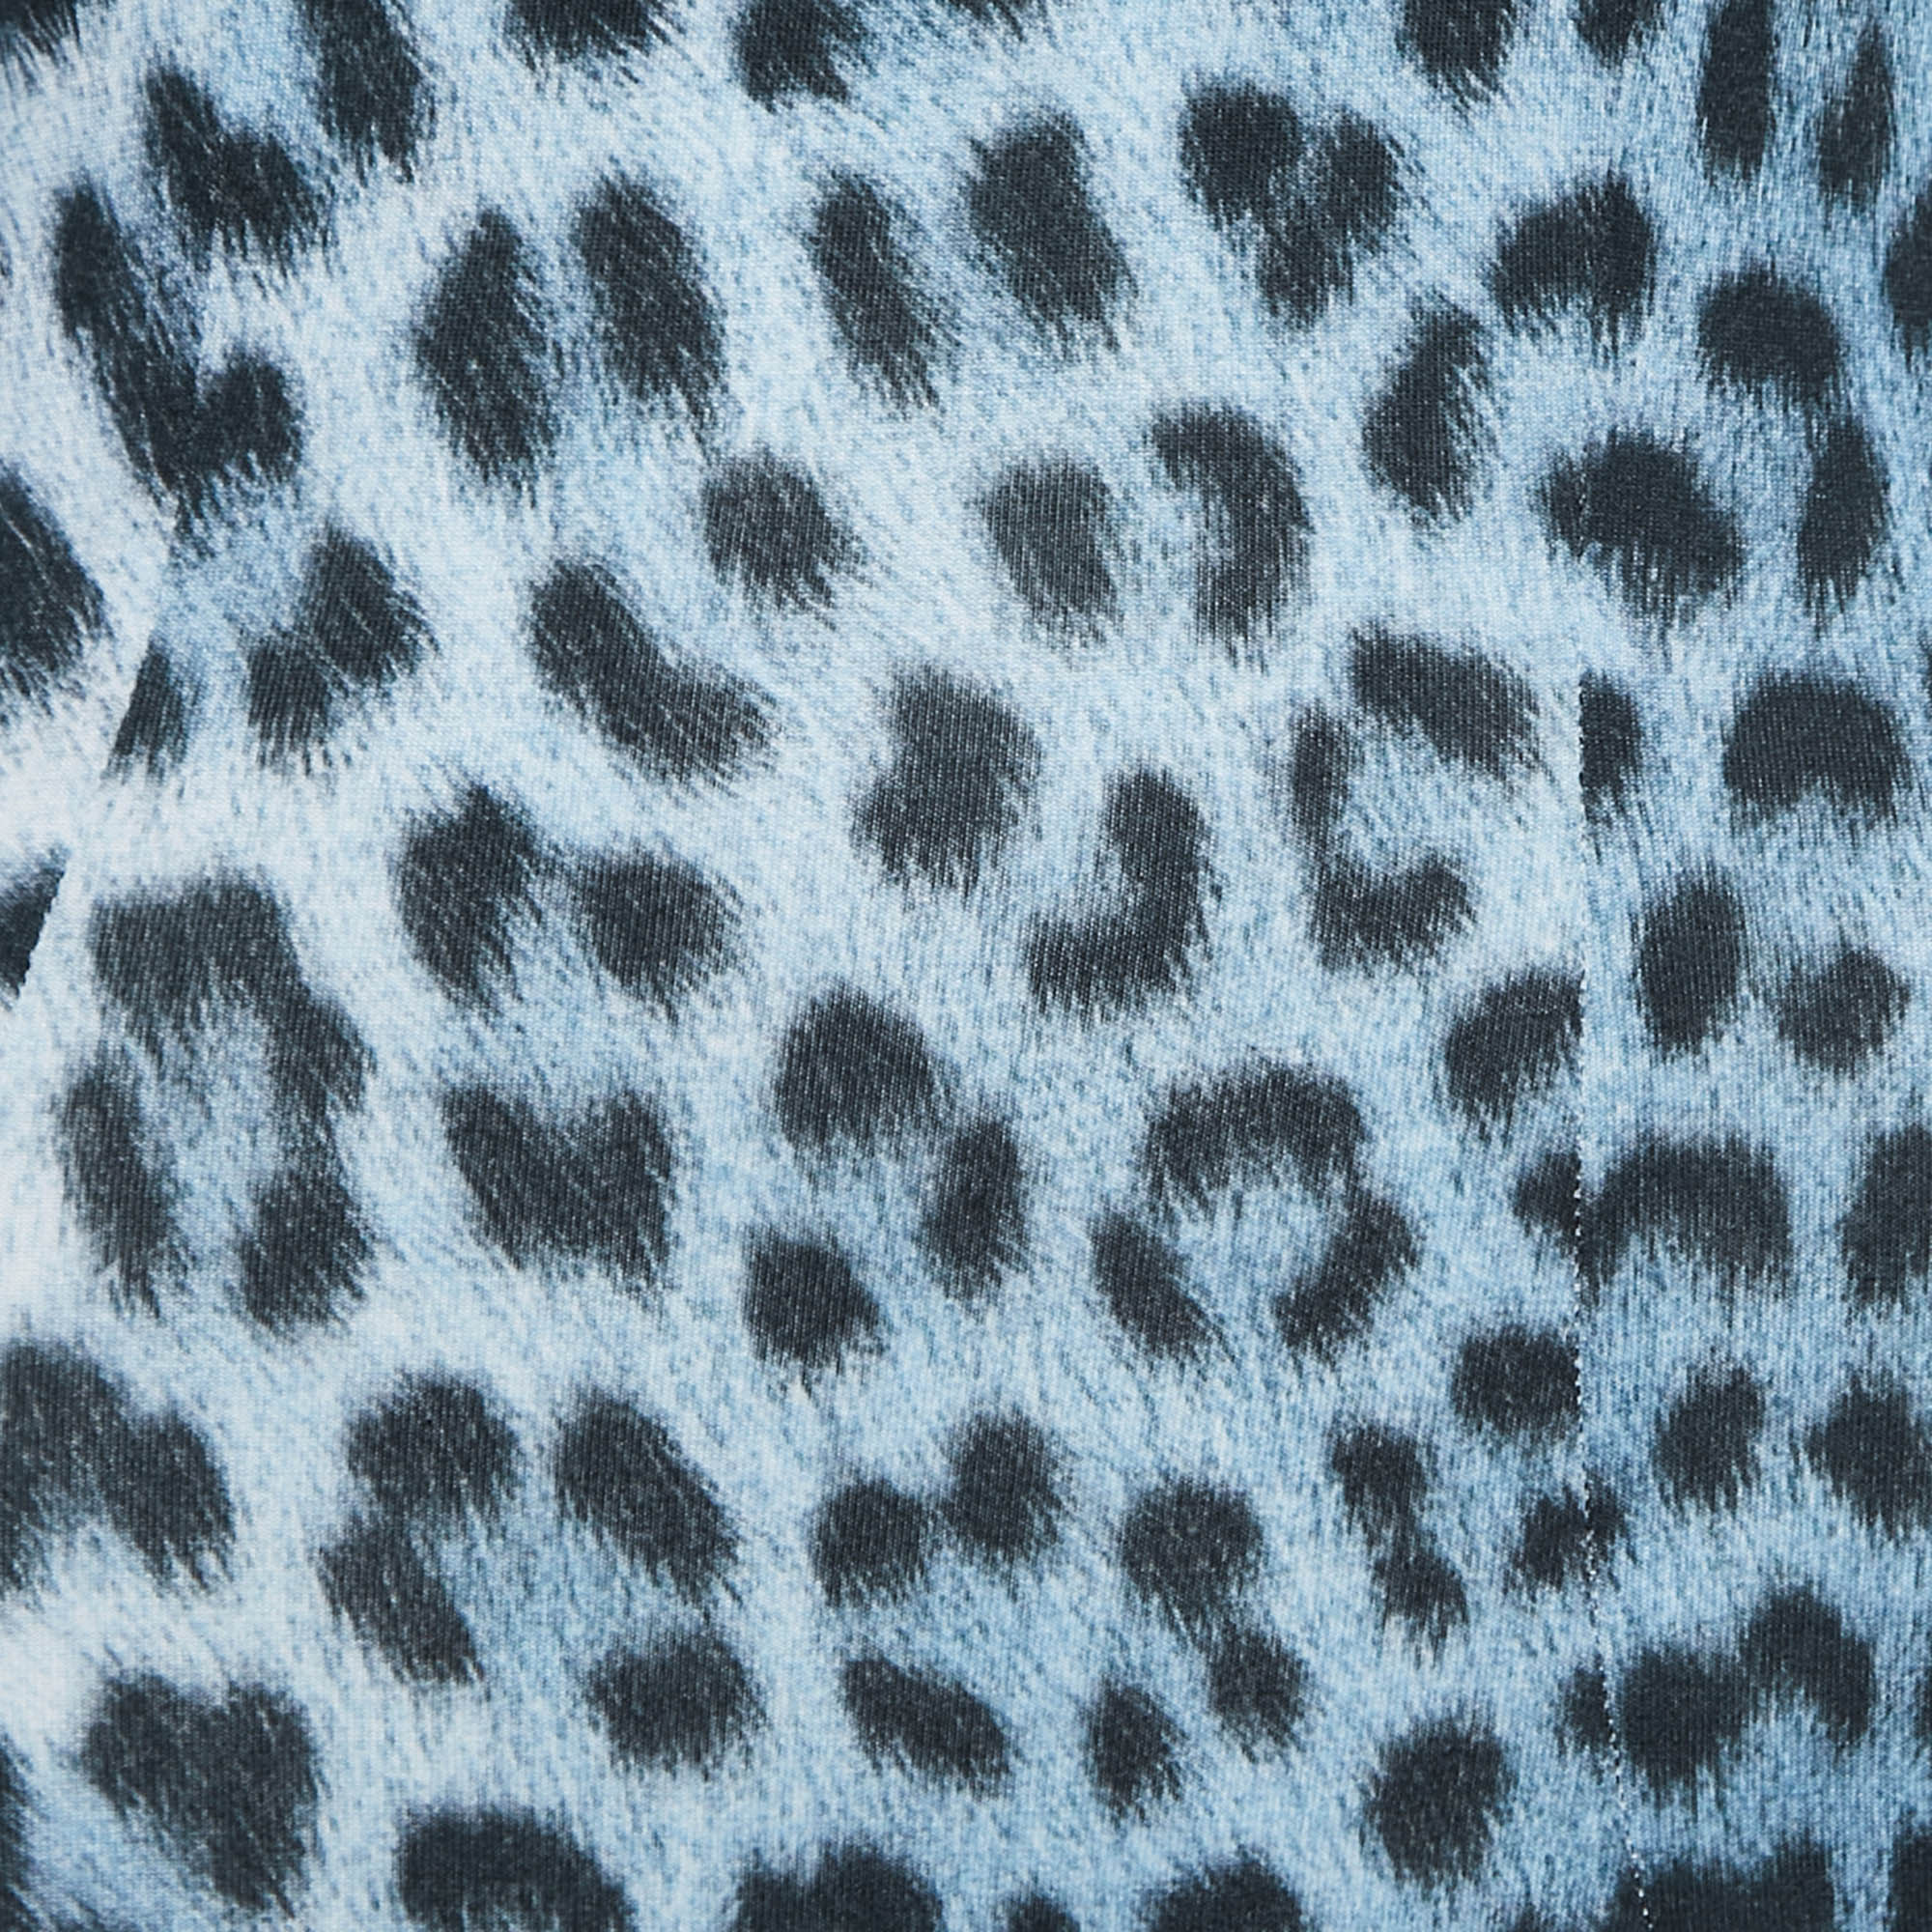 Just Cavalli Blue Leopard Print Knit Long Sleeve Mini Dress XS